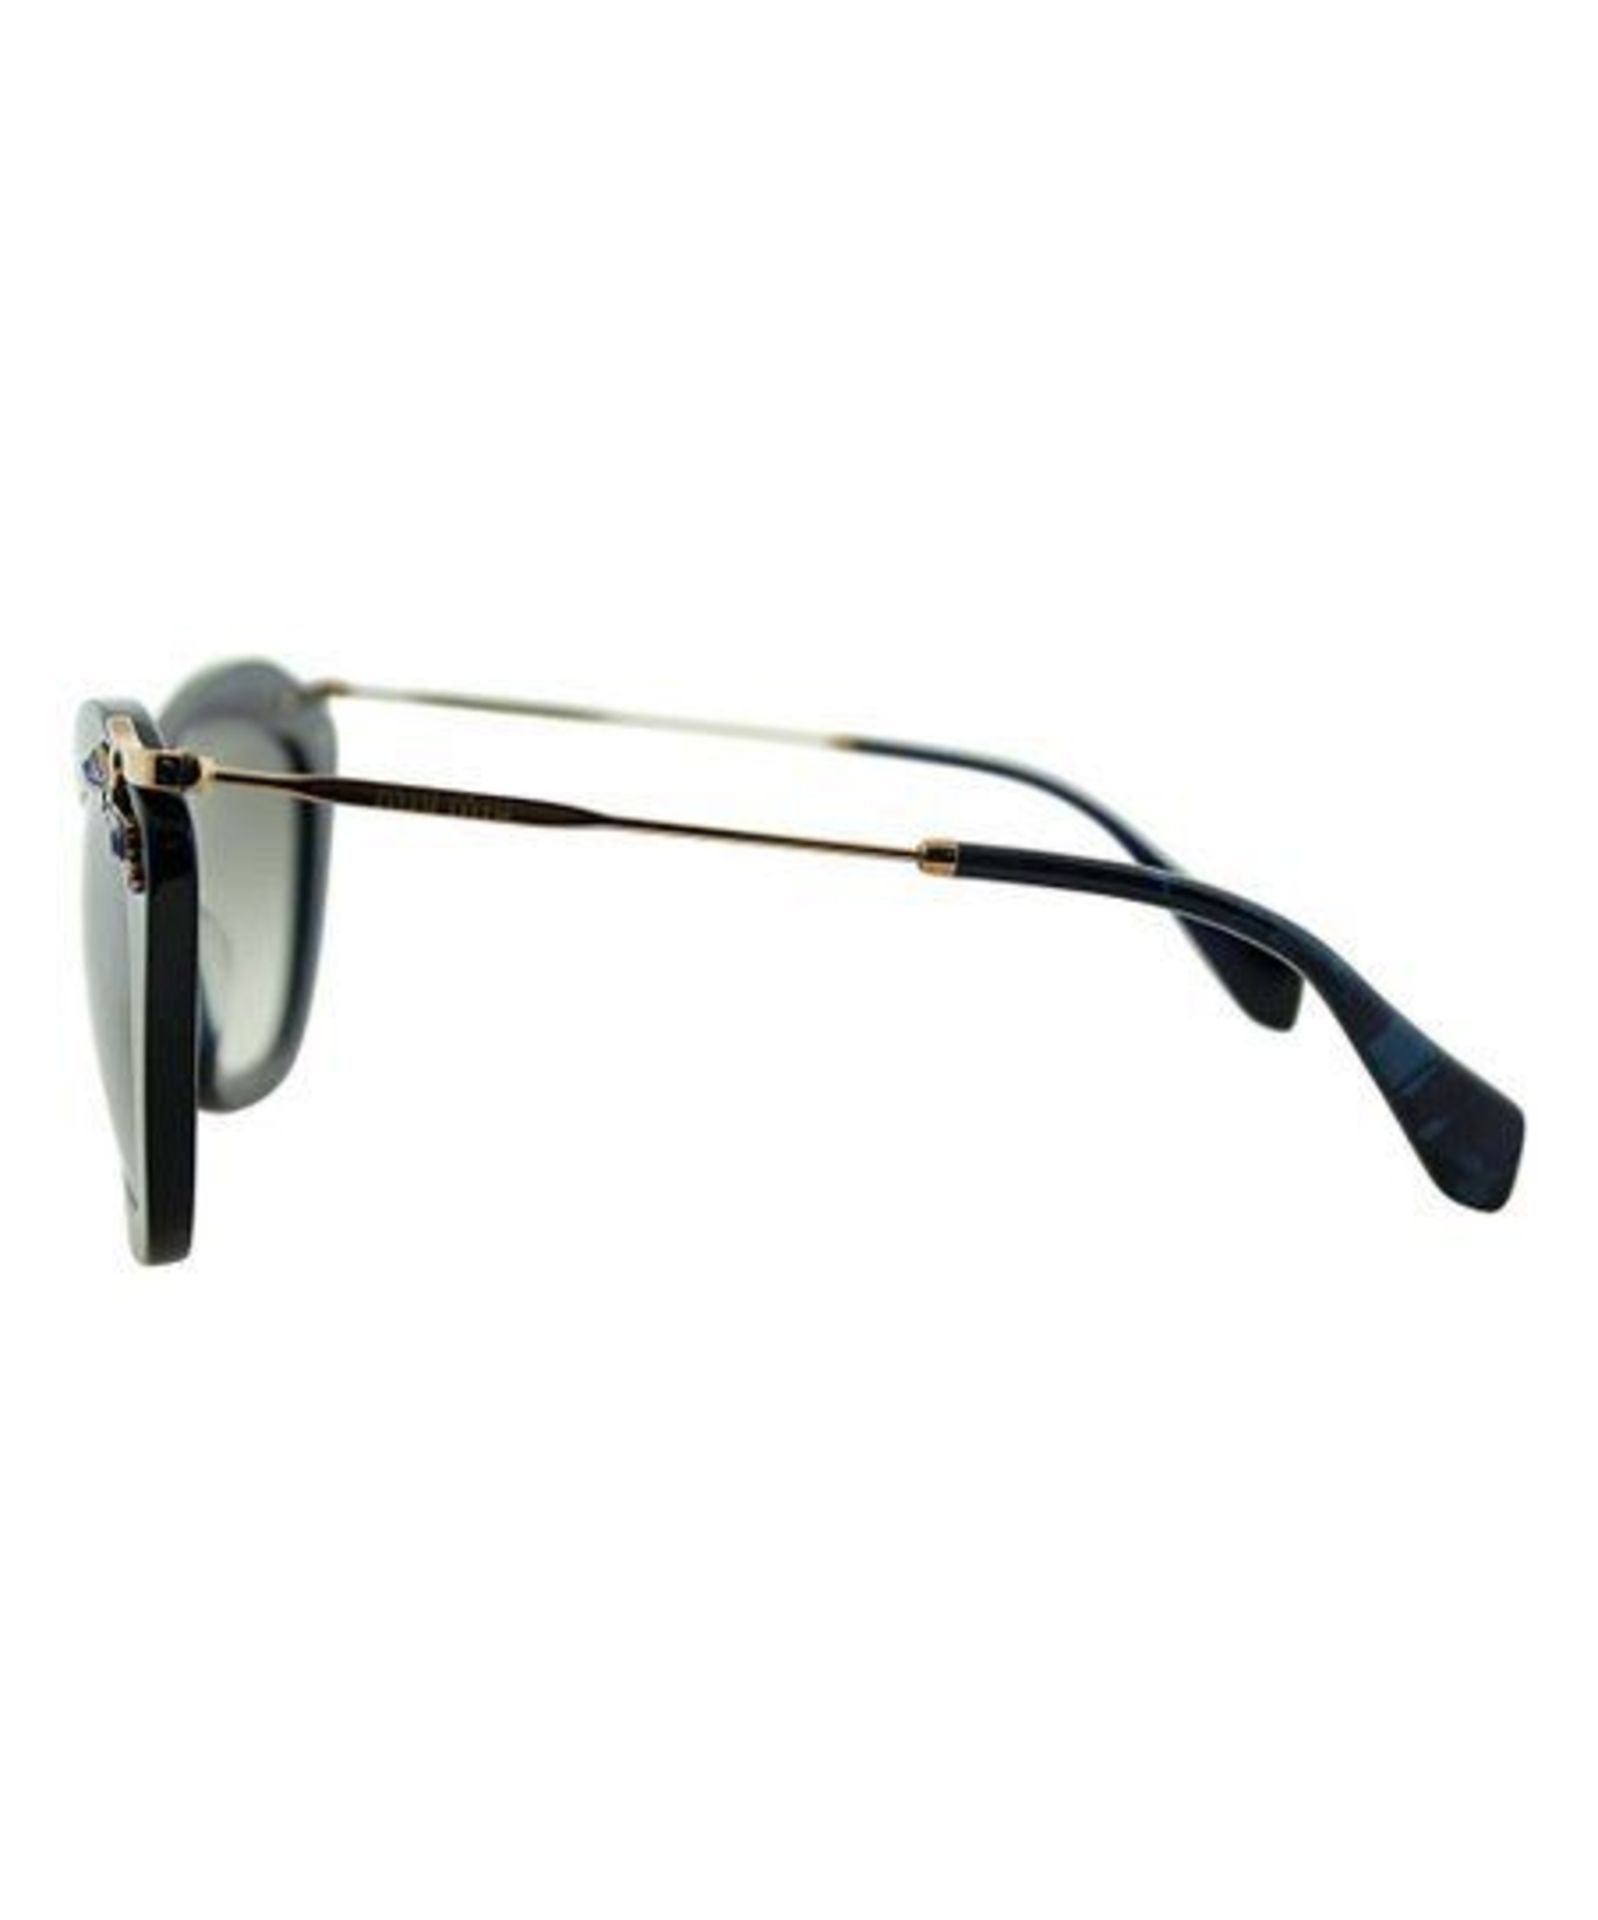 Miu Miu Blue Embellished Cat-Eye Sunglasses (New With Tags) [Ref: 40478595-Mi-Tub 9-Mi] - Image 3 of 3